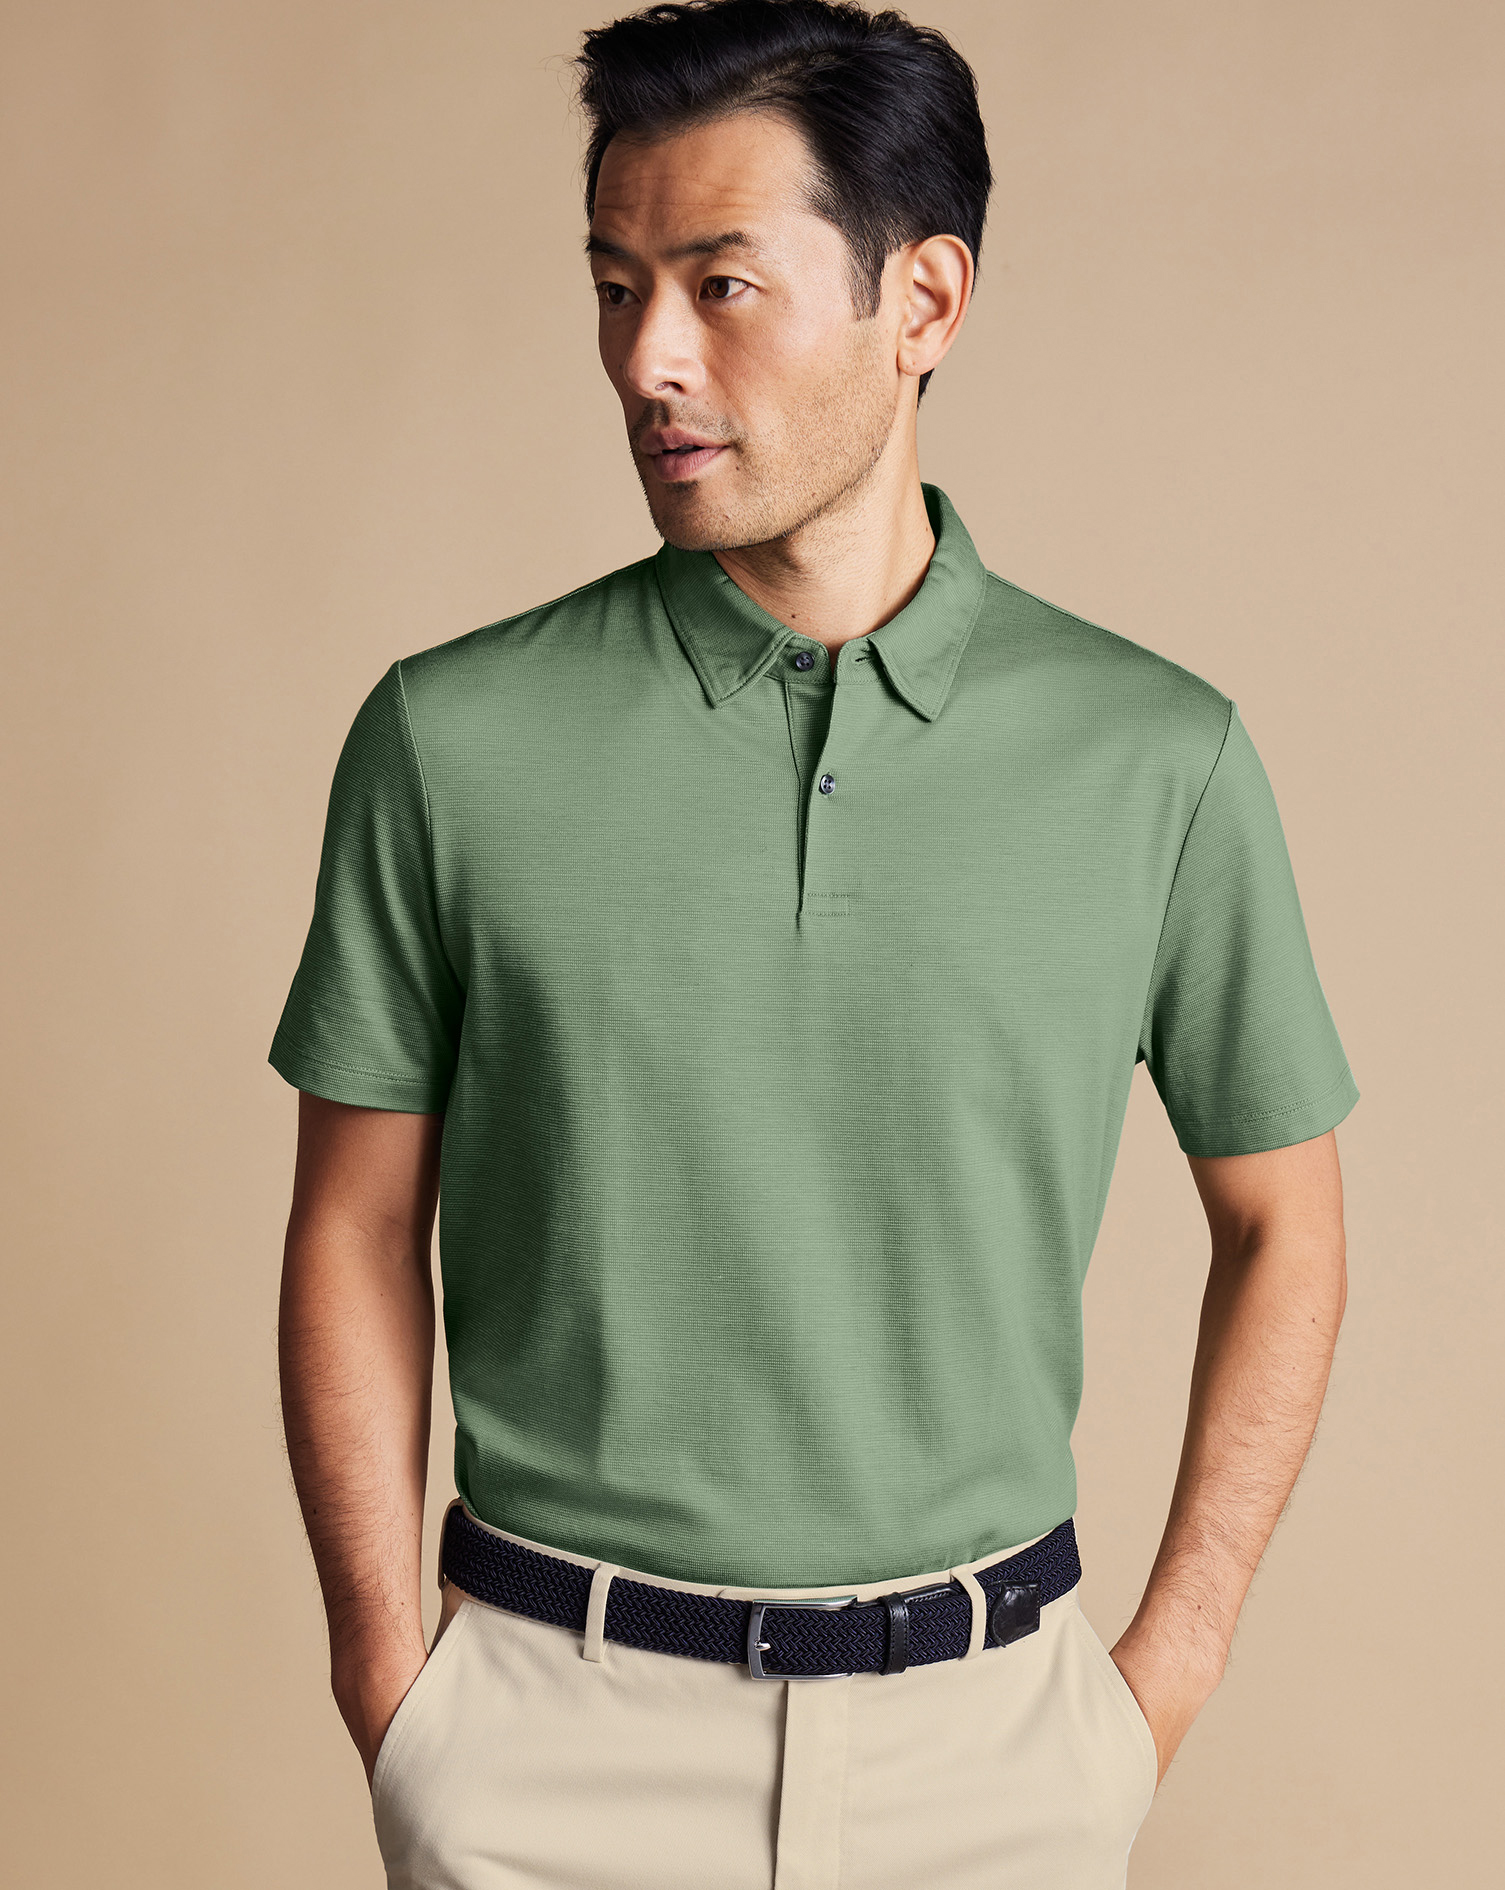 Men's Charles Tyrwhitt Cool Textured Polo Shirt - Light Green Size XXL Cotton
